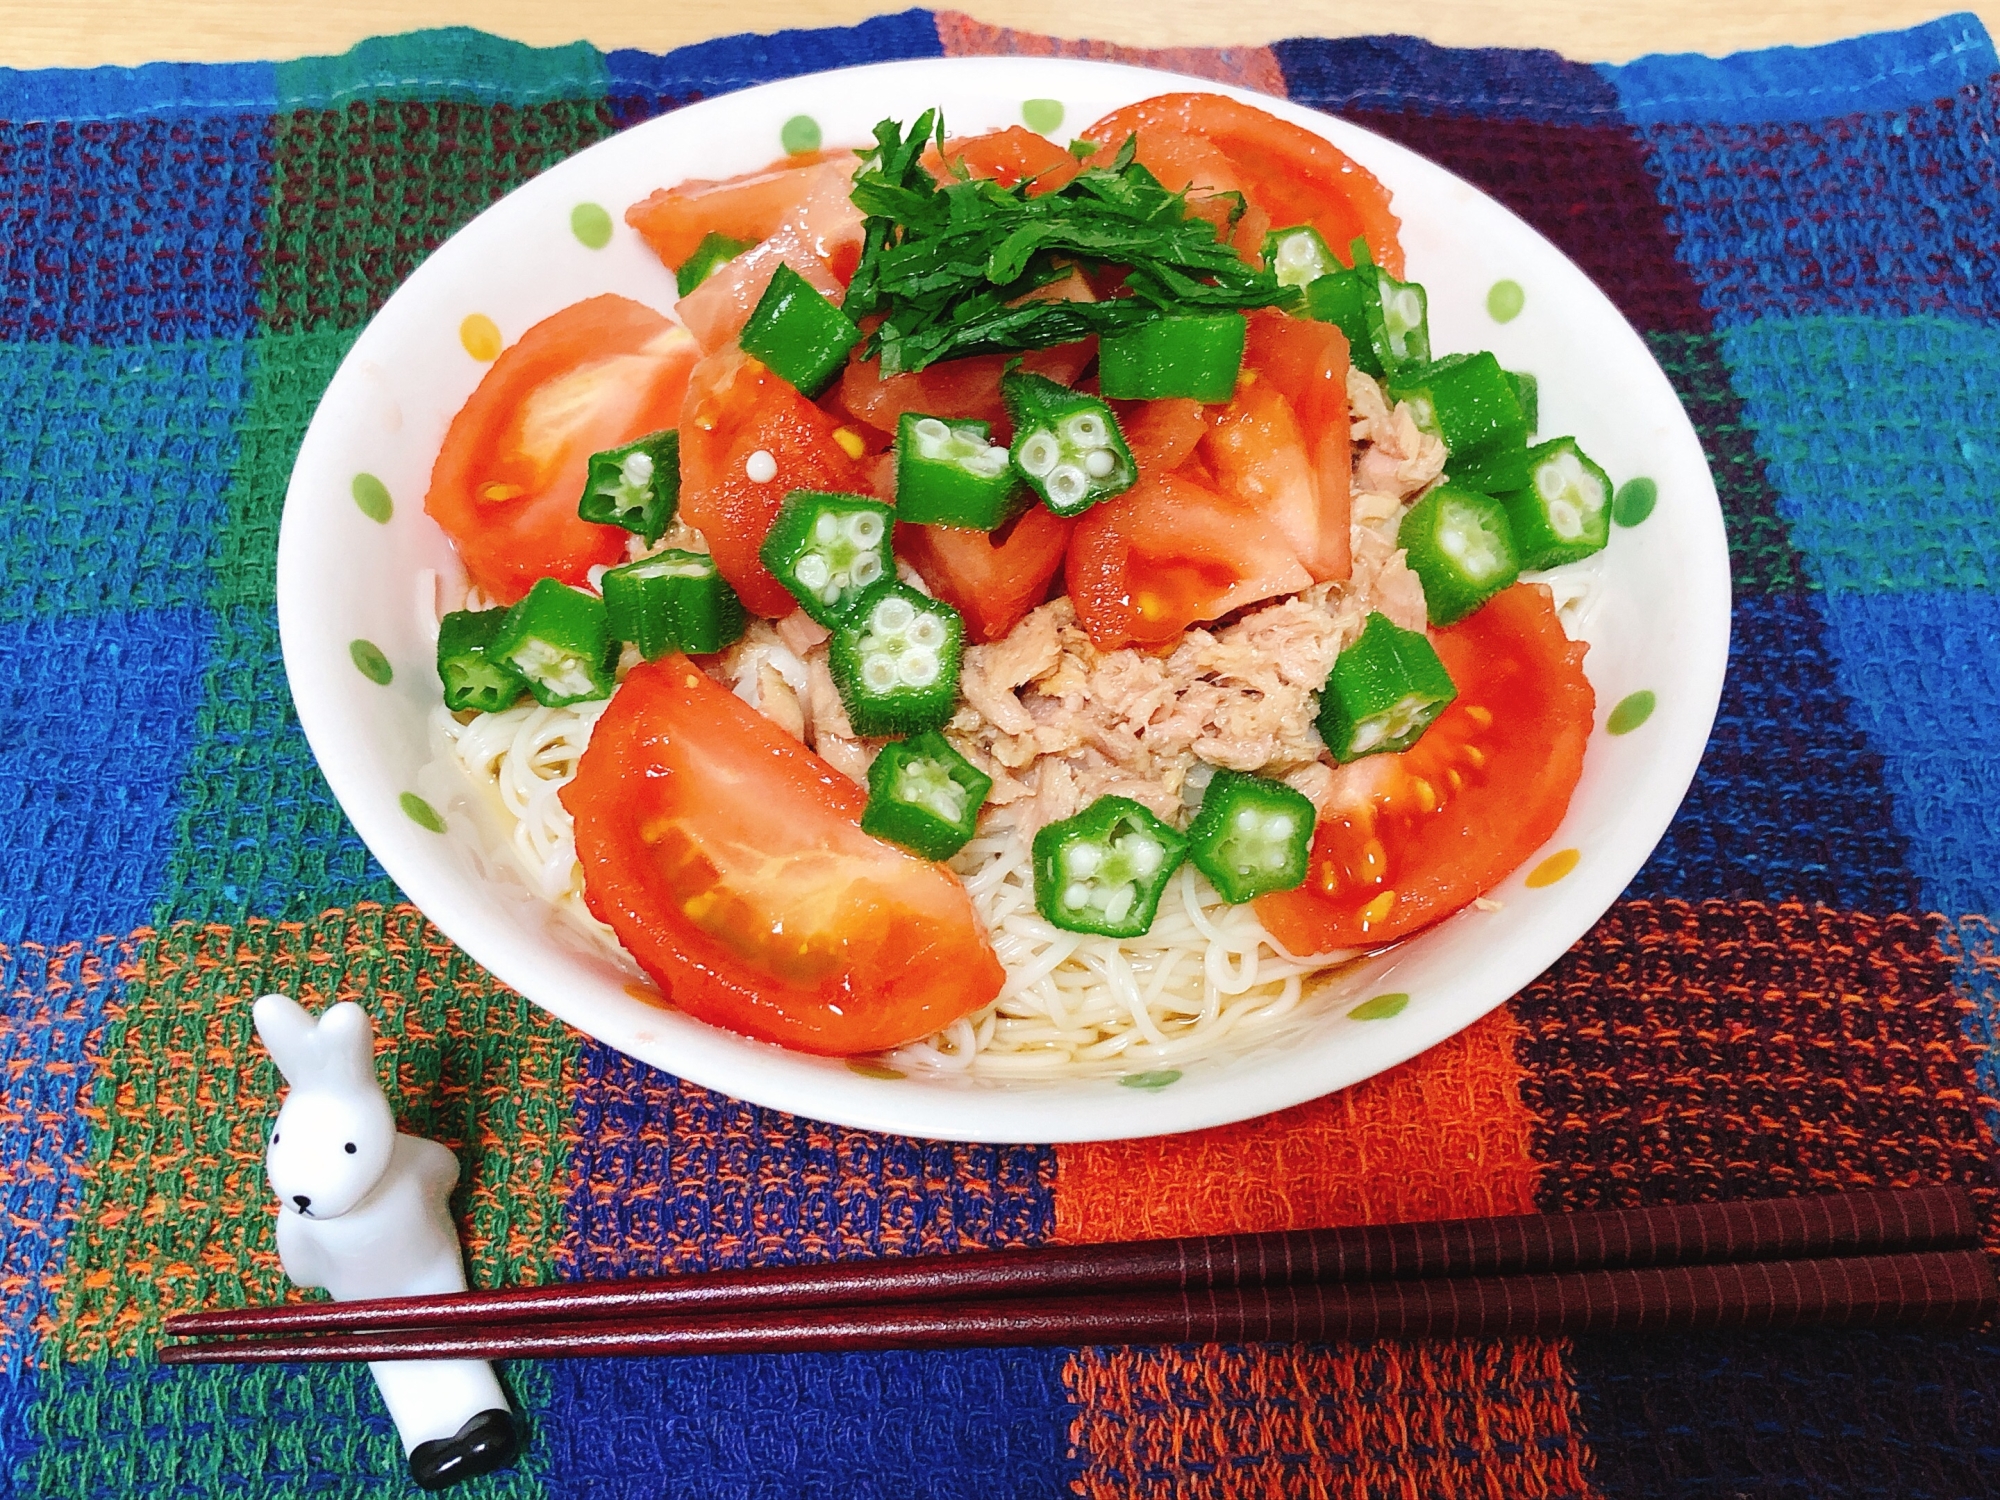 トマト満天☆夏の贅沢素麺(潰瘍性大腸炎◎)